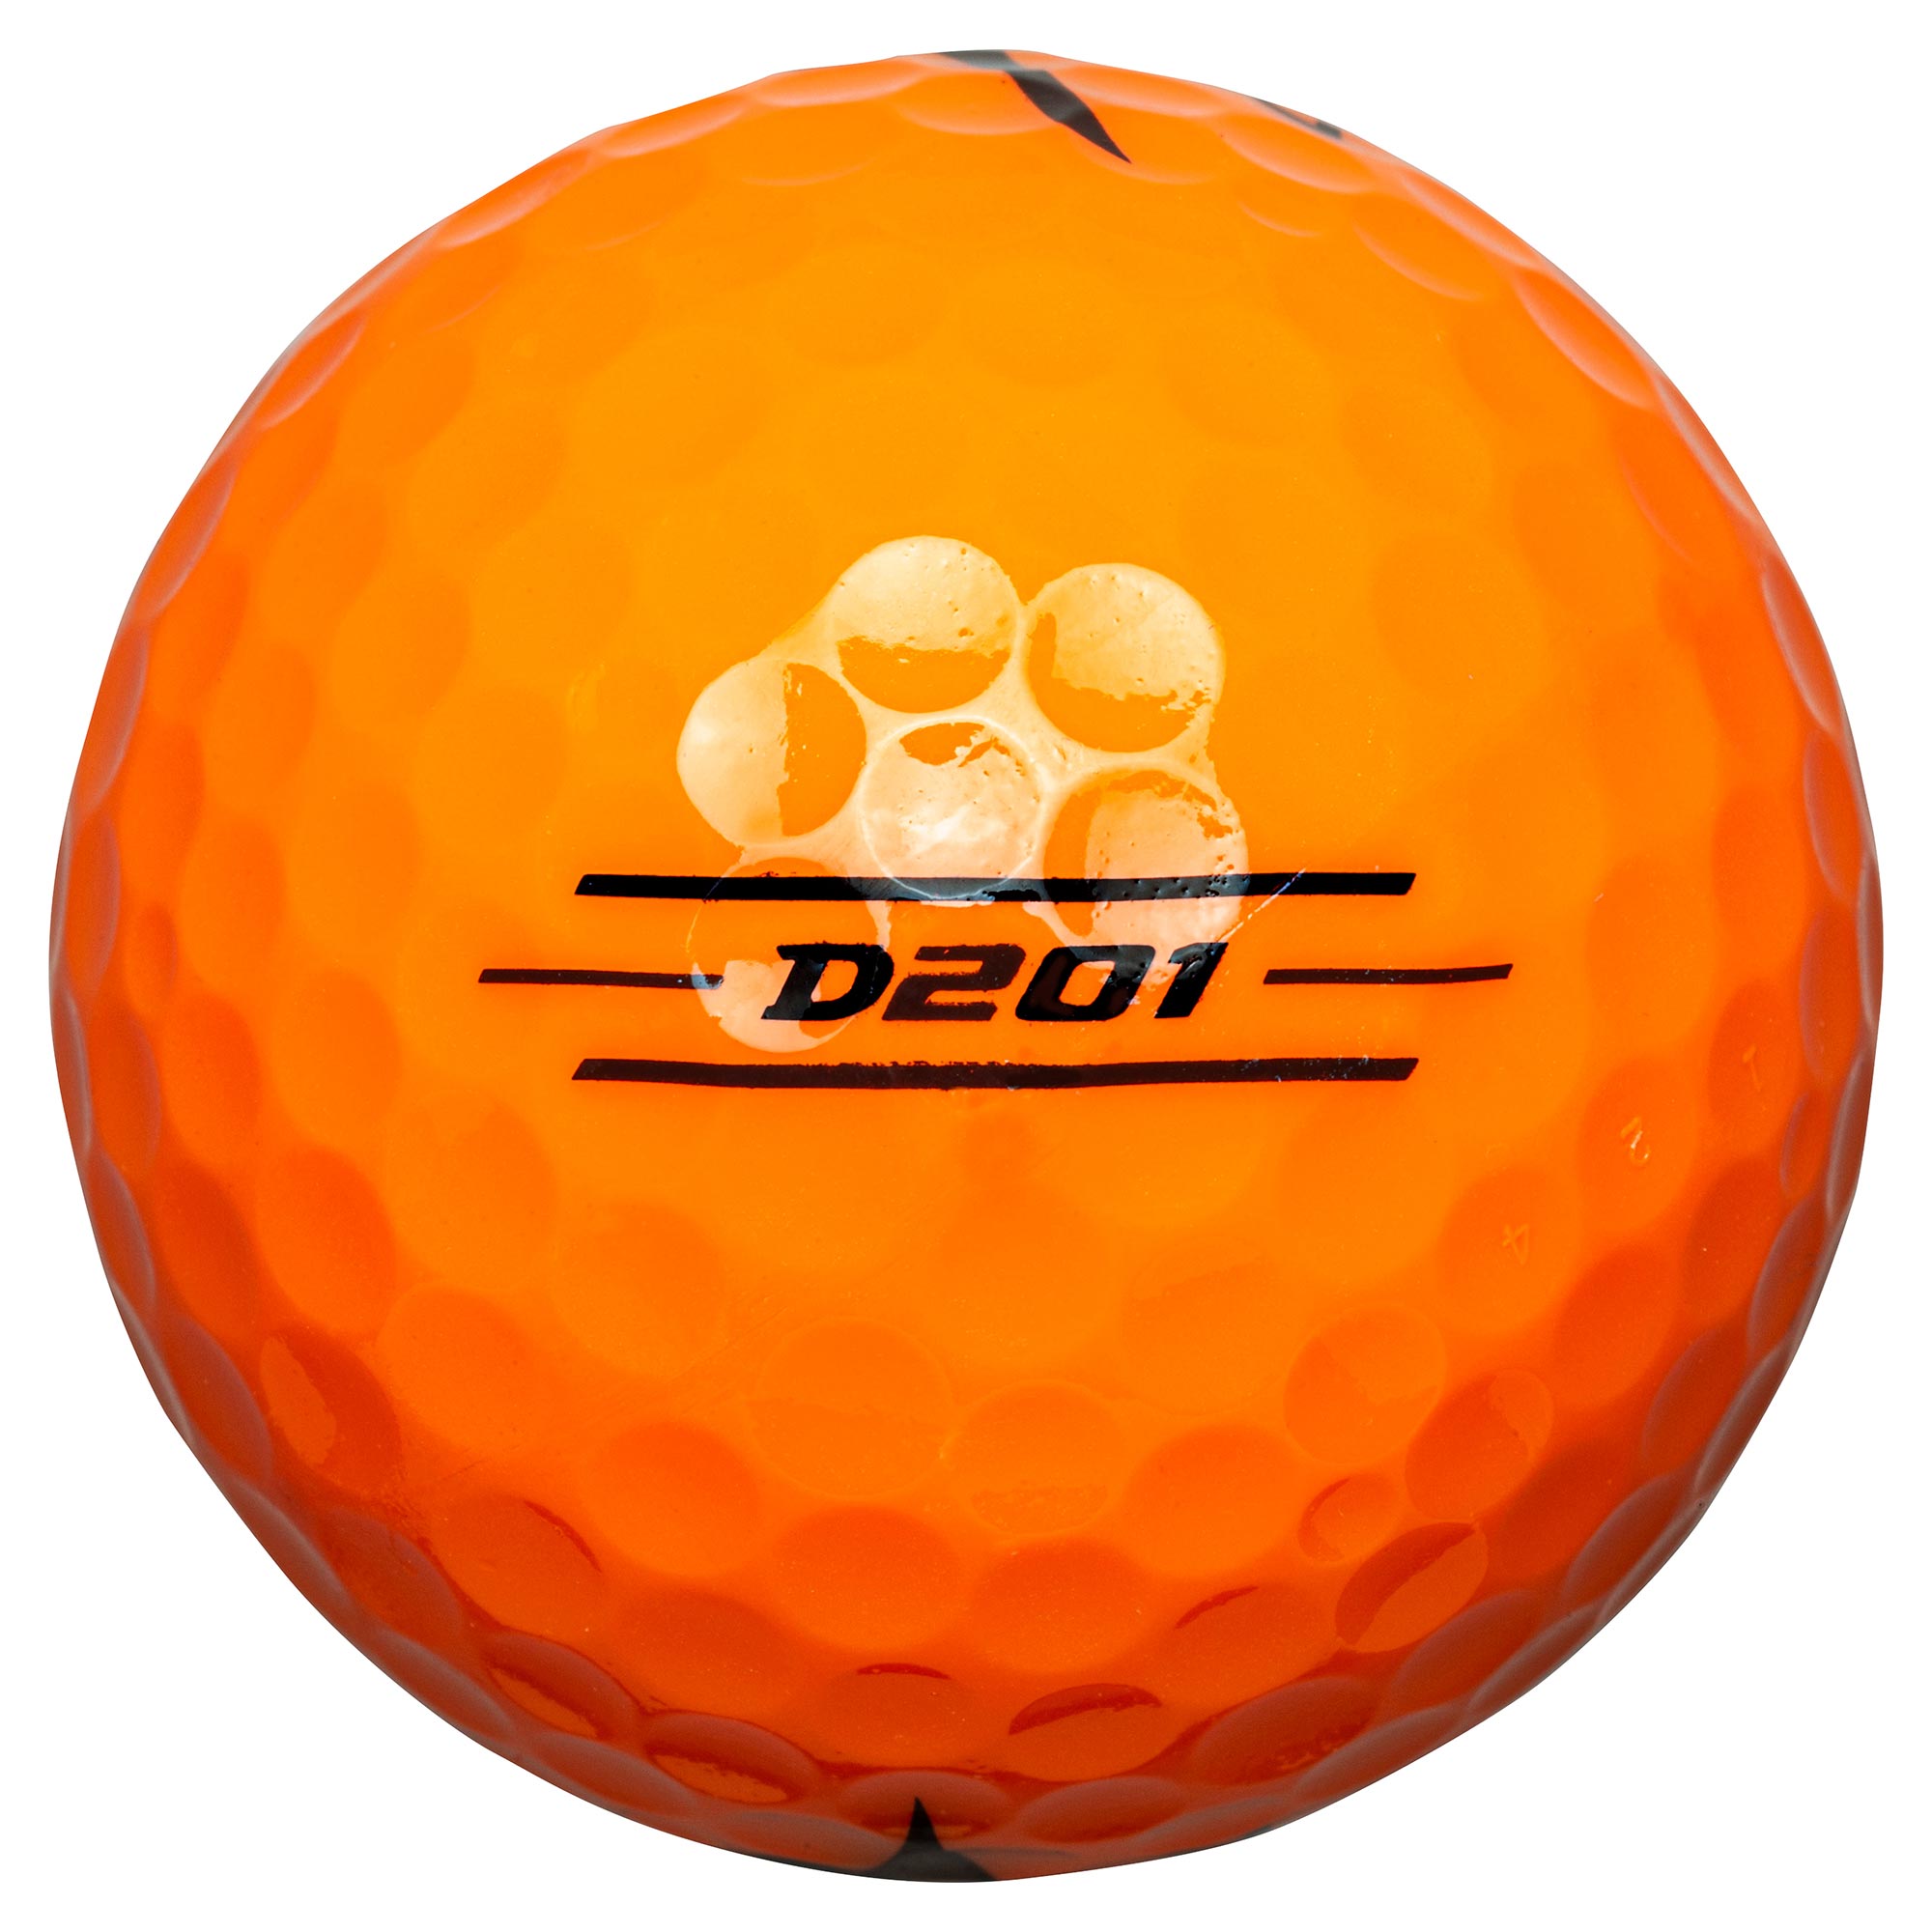 NEW D201 オレンジ(ダース)|5NJBD22040|ボール|ゴルフ|ミズノ公式 